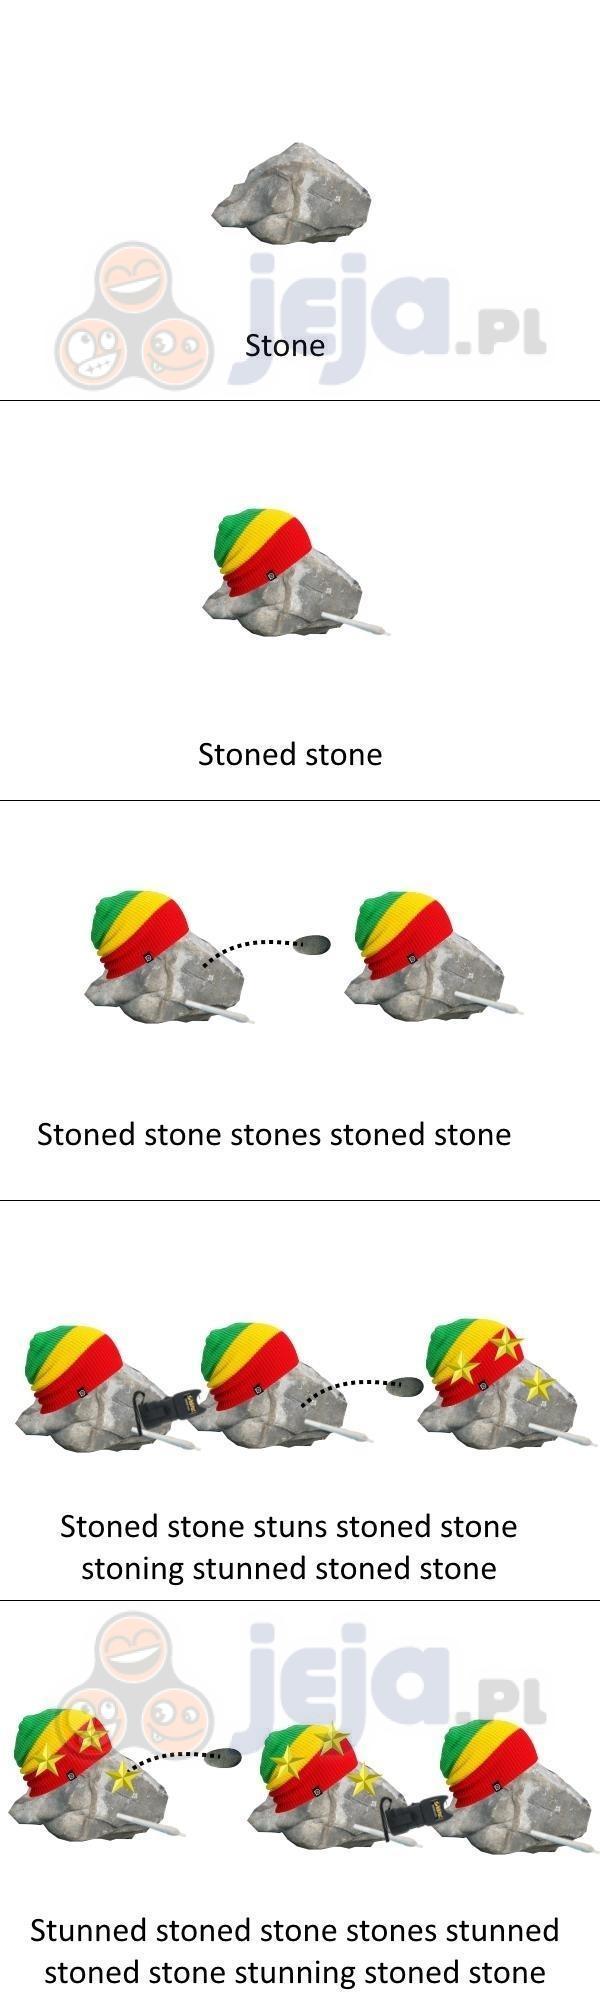 Zjarany kamień